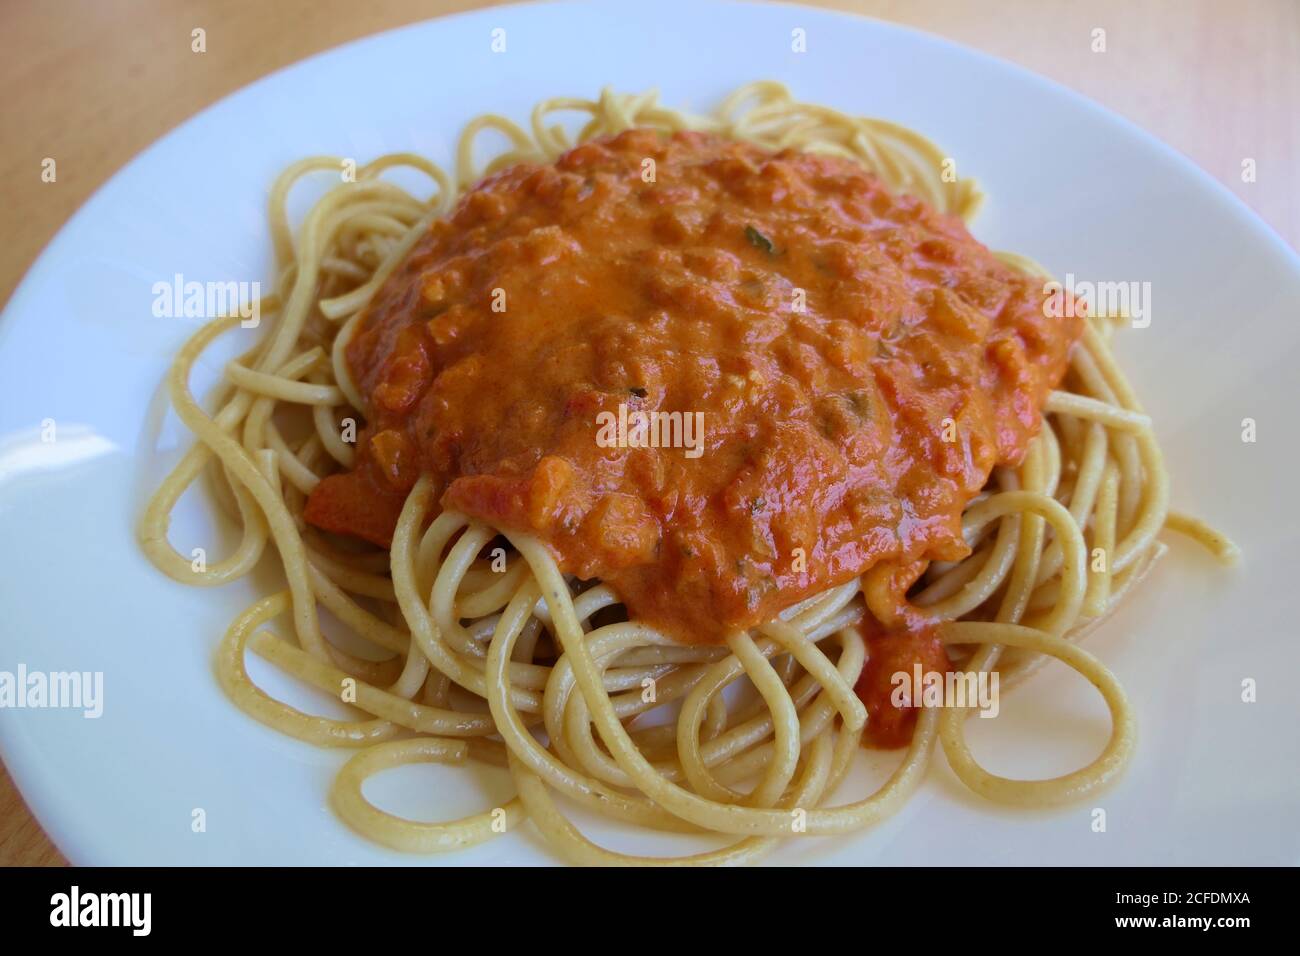 Ein Teller mit frisch gekochten Vollkornspaghetti Napoli mit Zwiebeln In die Sauce geben Stockfoto